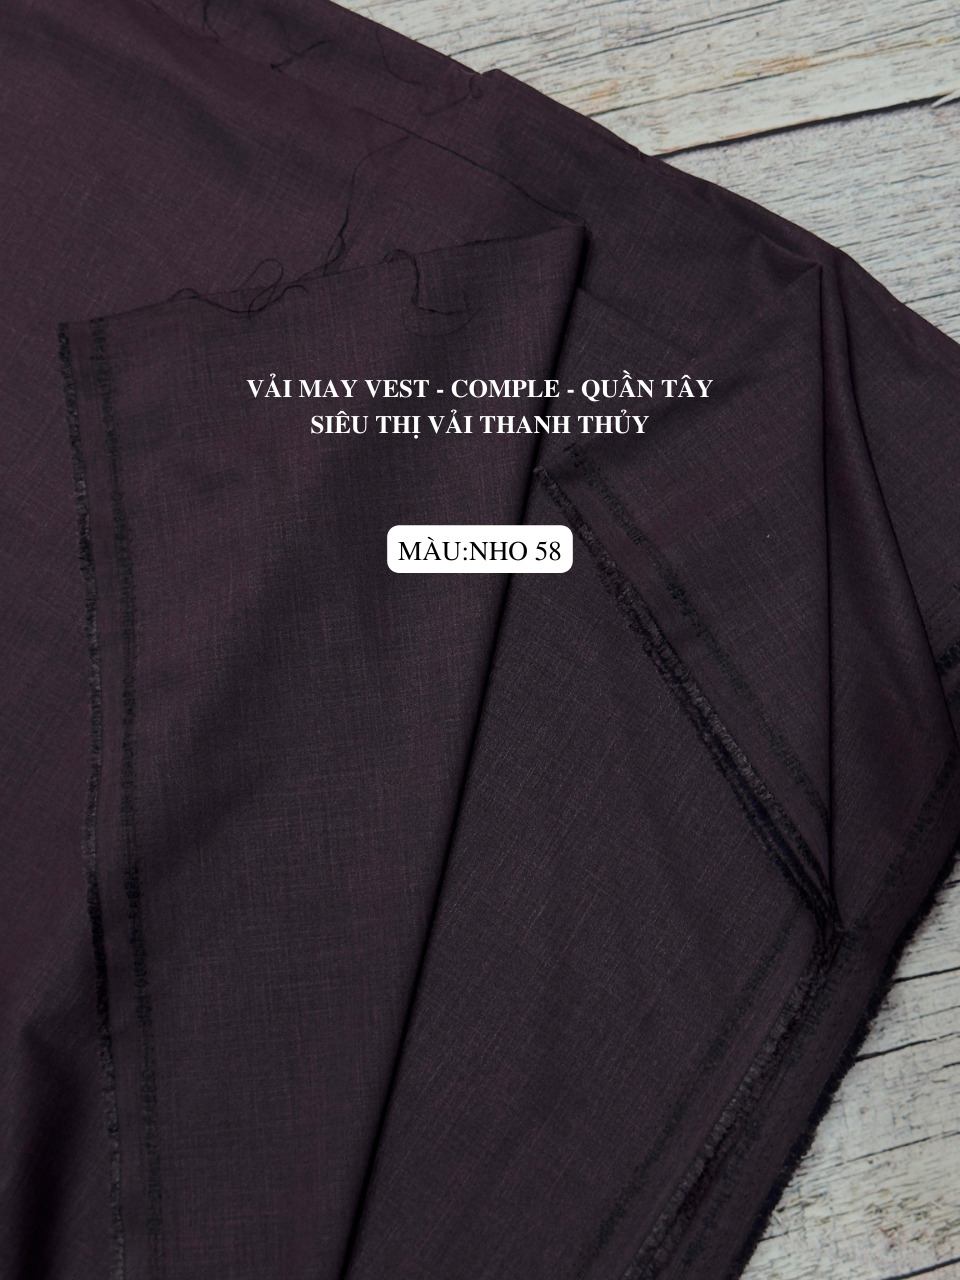 Vải may vest nam nữ giá rẻ chất lượng trên Toàn Quốc-Cửa hàng vải Tâm